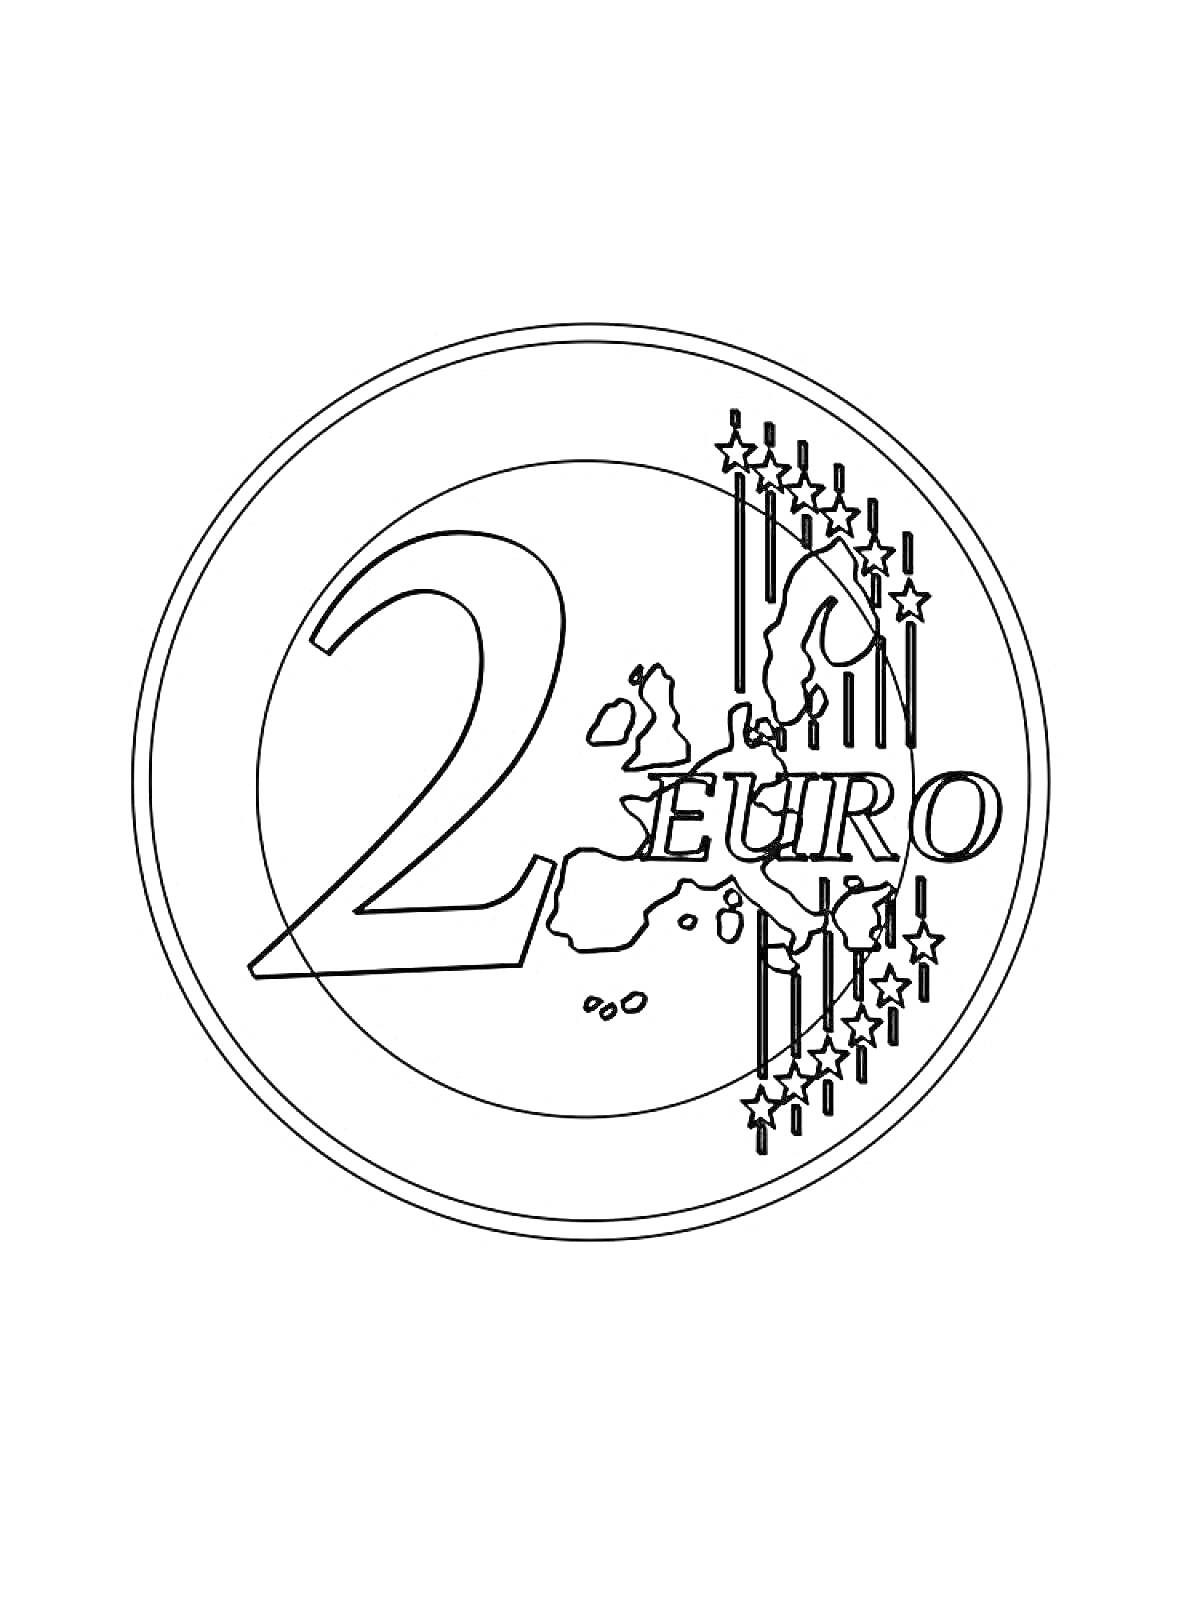 монета номиналом 2 евро с изображением цифры 2, карты Европы и звезд